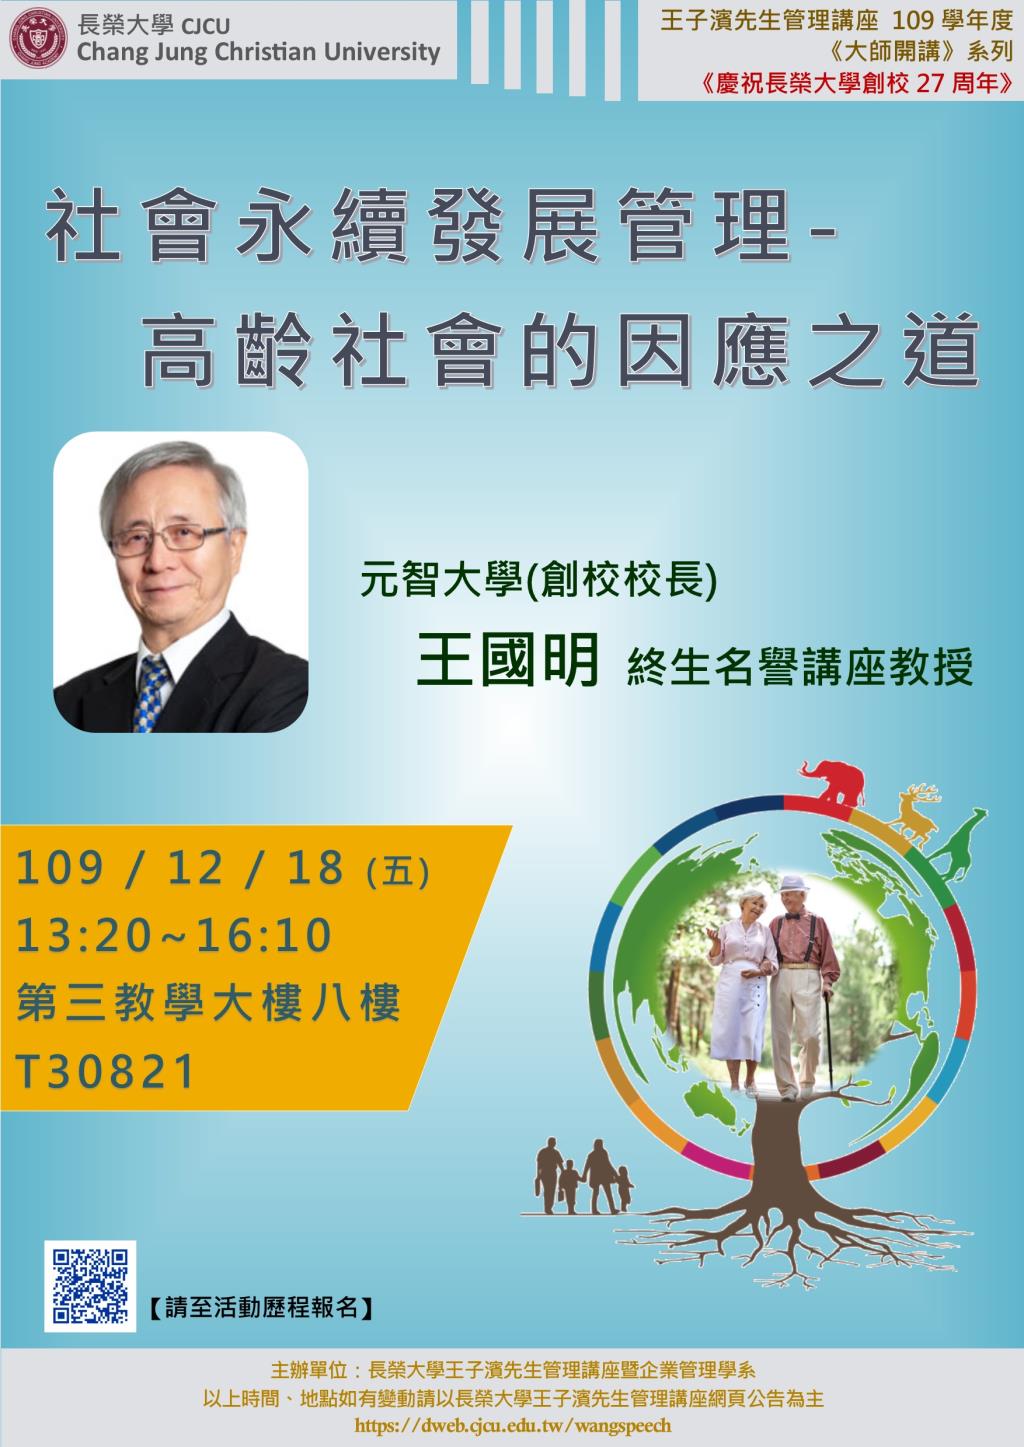 敬邀參加本週五下午(12/18)王子濱先生管理講座--社會永續發展管理 元智大學 王國明終身名譽講座教授